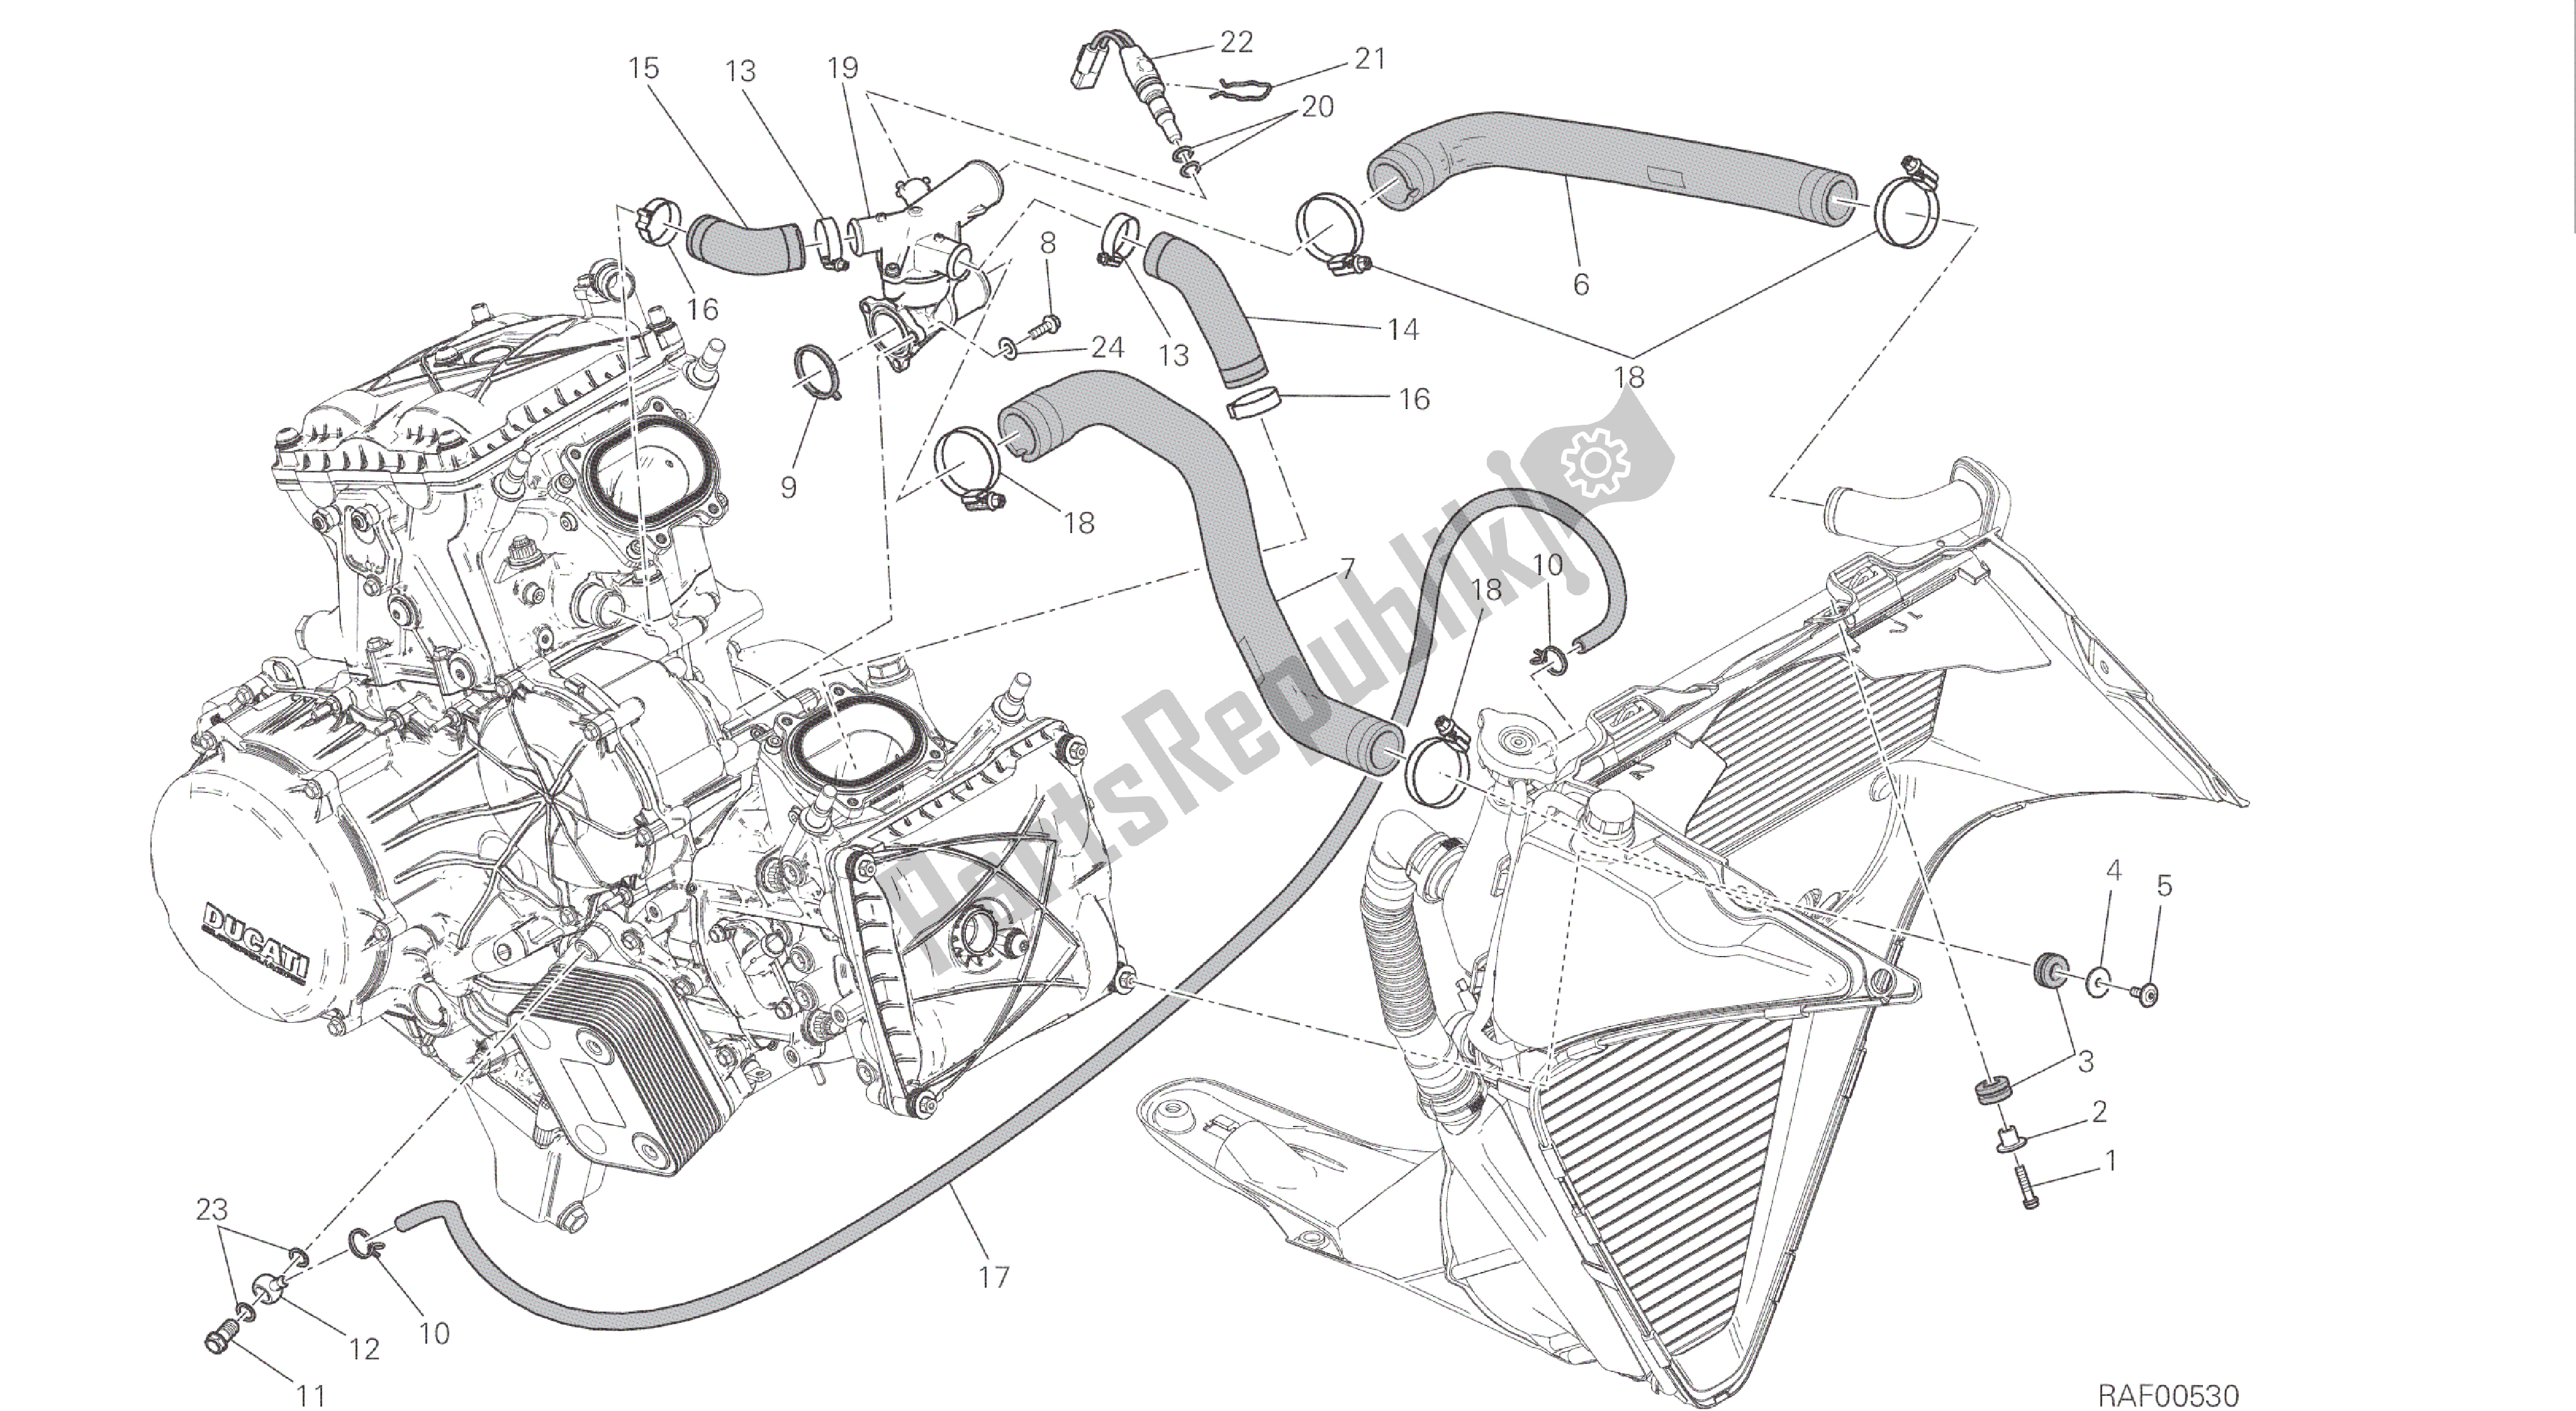 Todas las partes para Dibujo 031 - Sistema De Enfriamiento [mod: 1299s; Xst: Marco De Grupo Aus, Eur, Fra, Jap, Twn] de Ducati Panigale S ABS 1299 2016